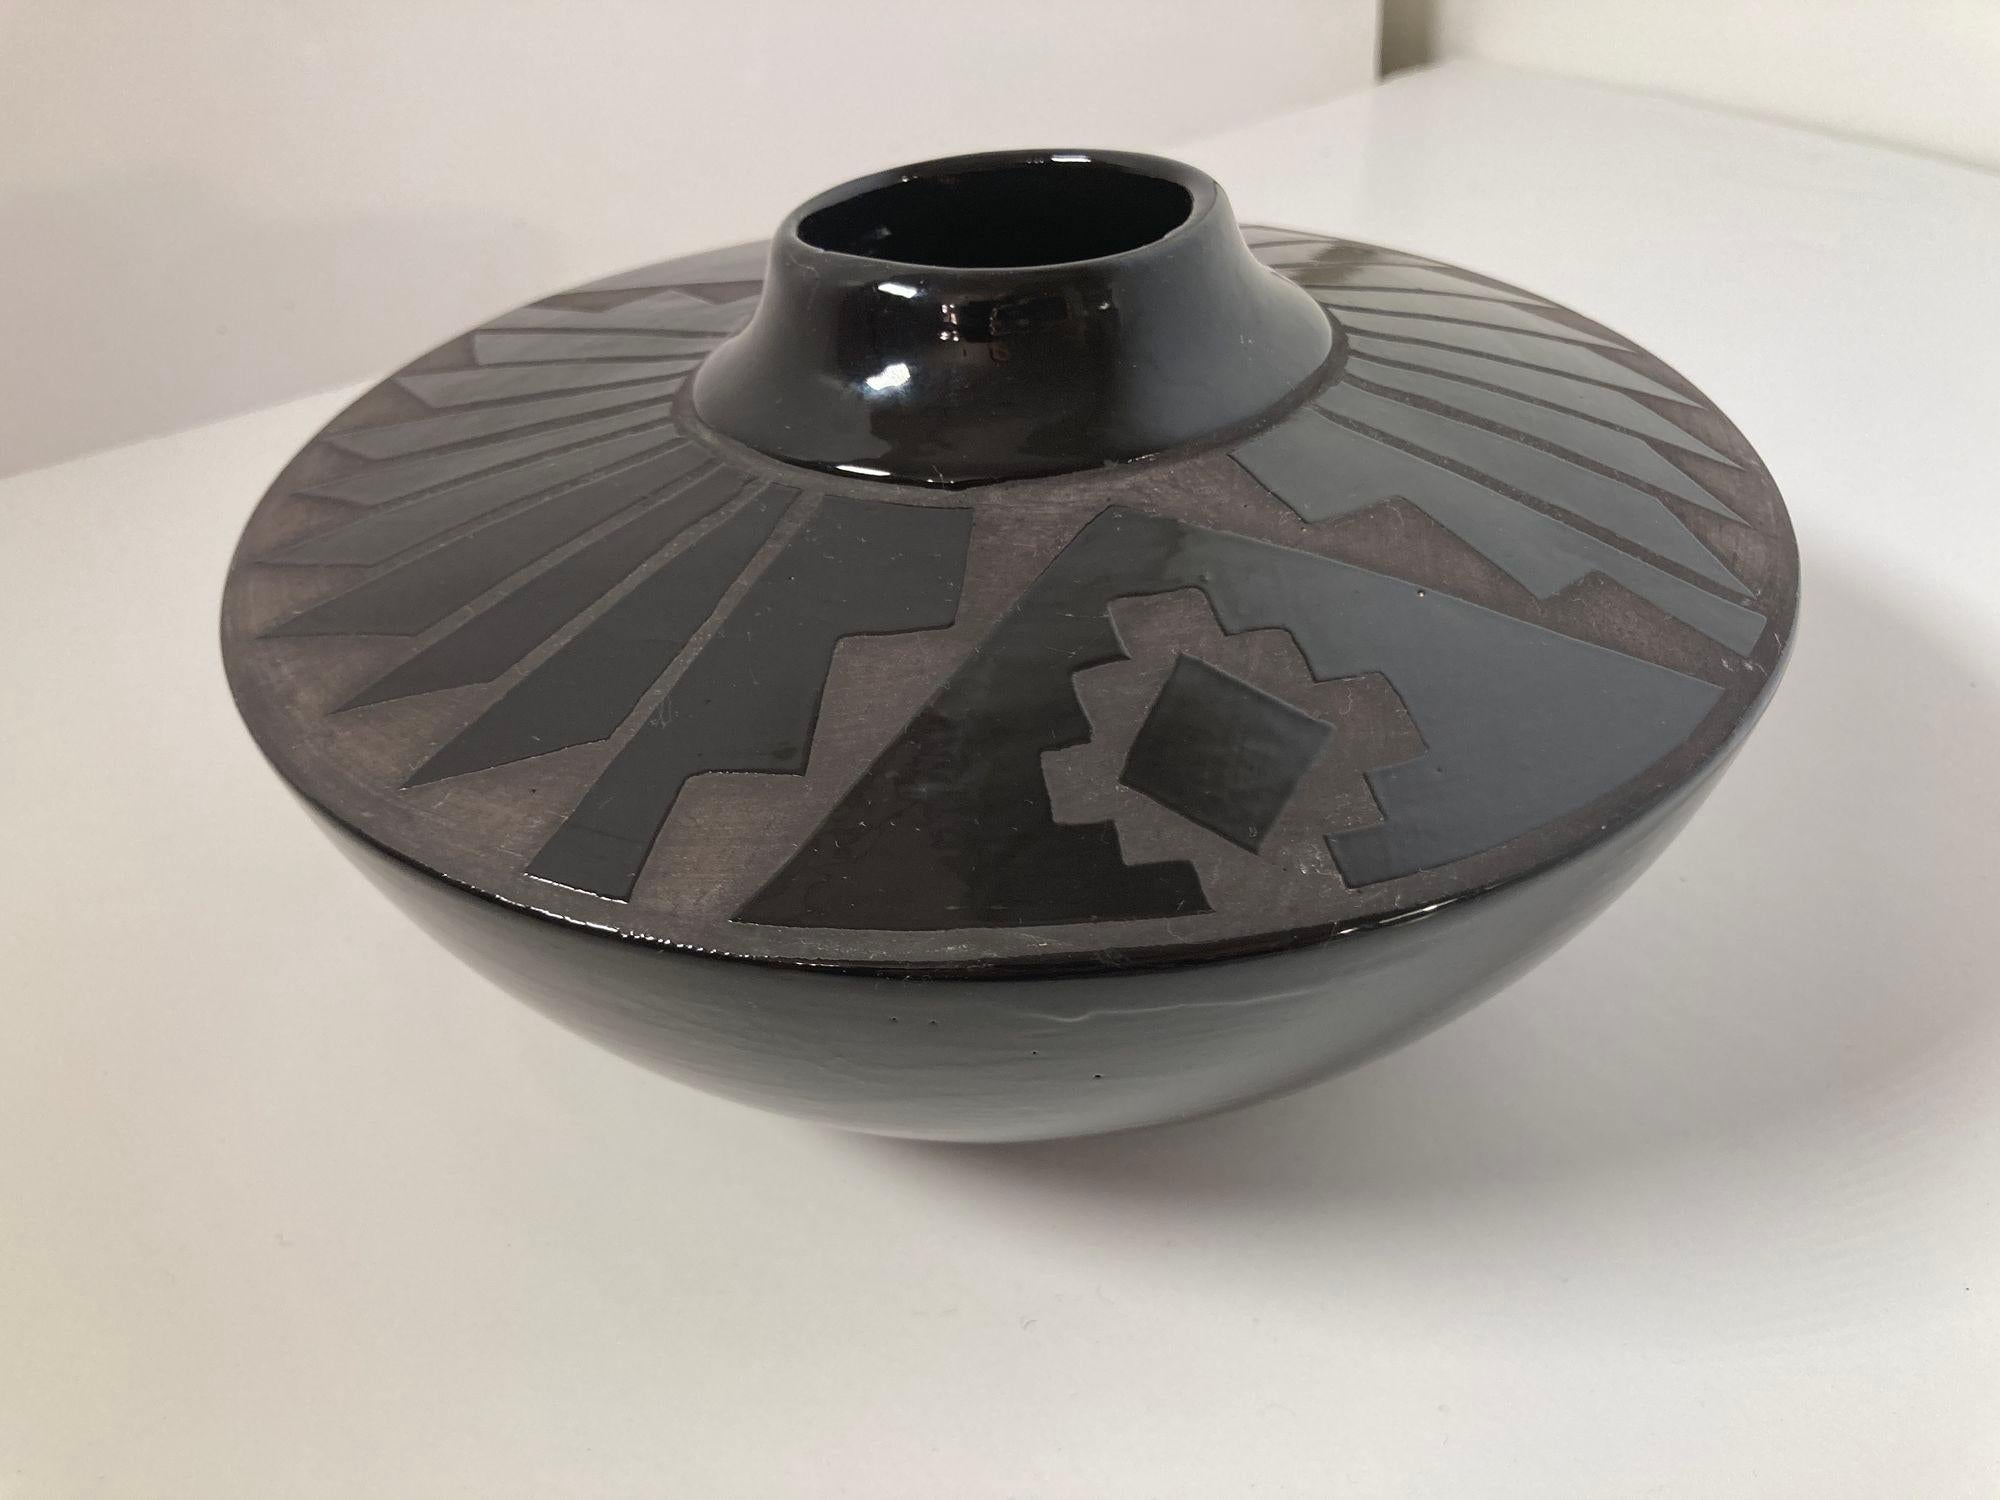 Mata Ortiz Stil schöne handgedrehte geometrische blackware Vase, schwarz auf schwarz.
Das runde Keramikstück ist aus schwarzem glasiertem Ton gefertigt und mit einem einzigartigen geometrischen Pfeildesign im Stil des Töpfers von Mata Ortiz